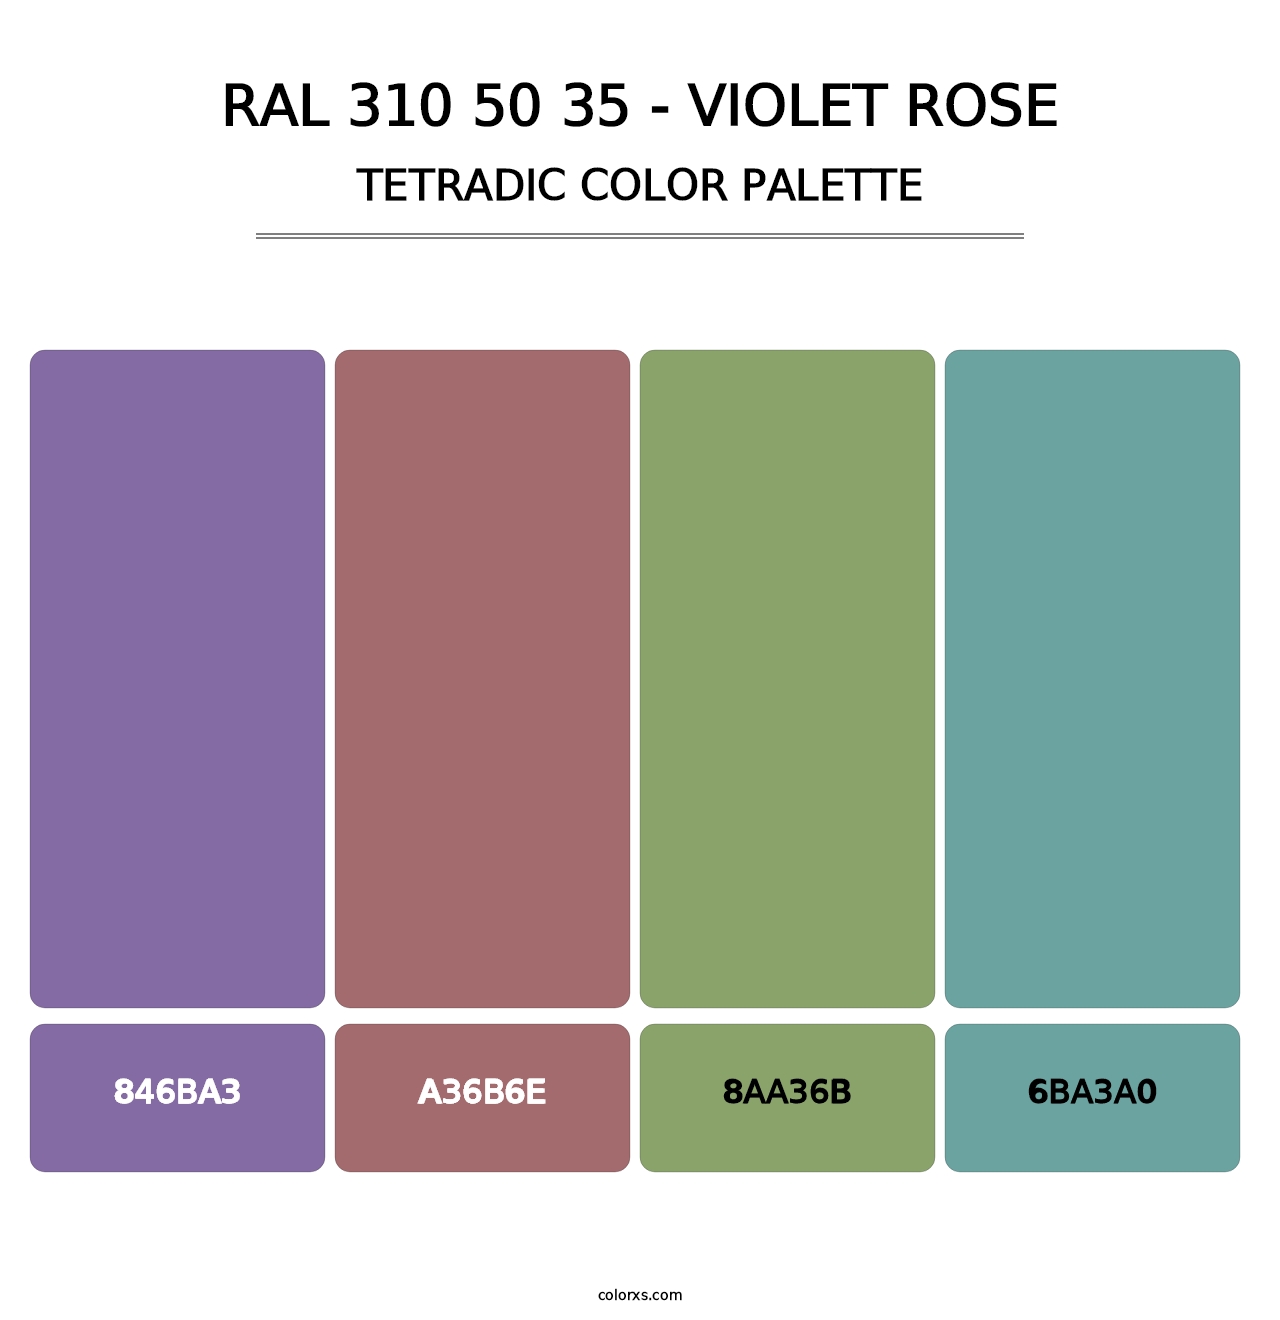 RAL 310 50 35 - Violet Rose - Tetradic Color Palette